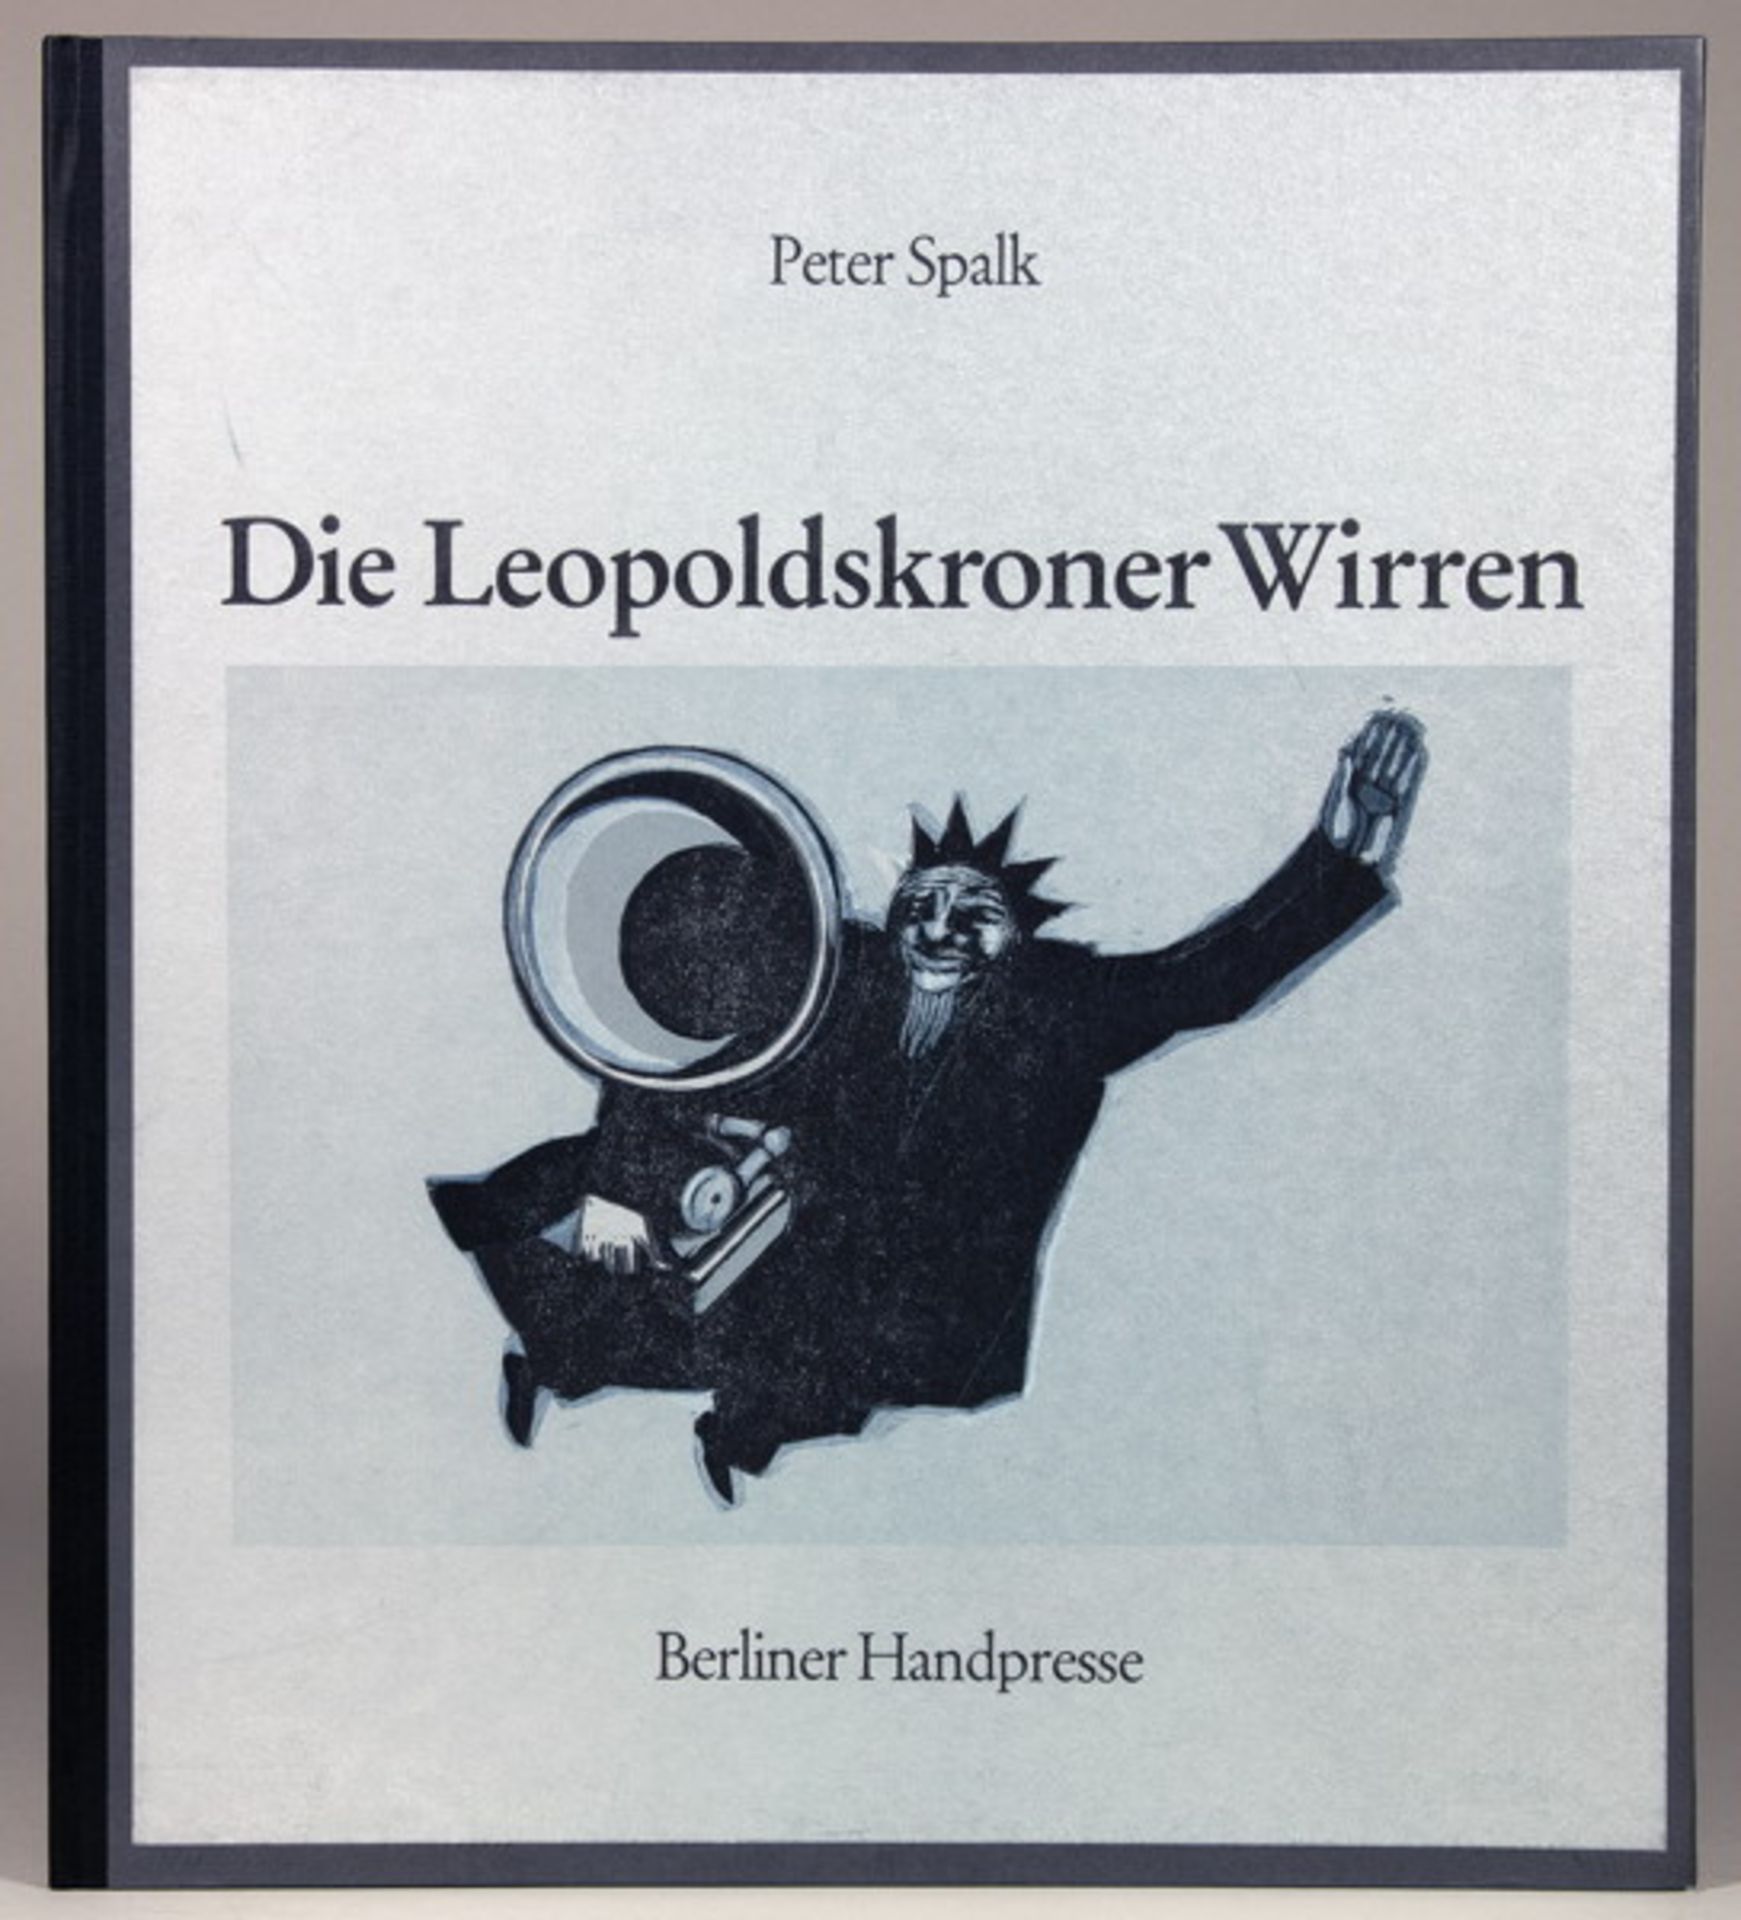 Berliner Handpresse - Acht Drucke. Berlin 1974–1987. Mit blattgroßen Farblinolschnitten von Wolfgang - Image 6 of 8